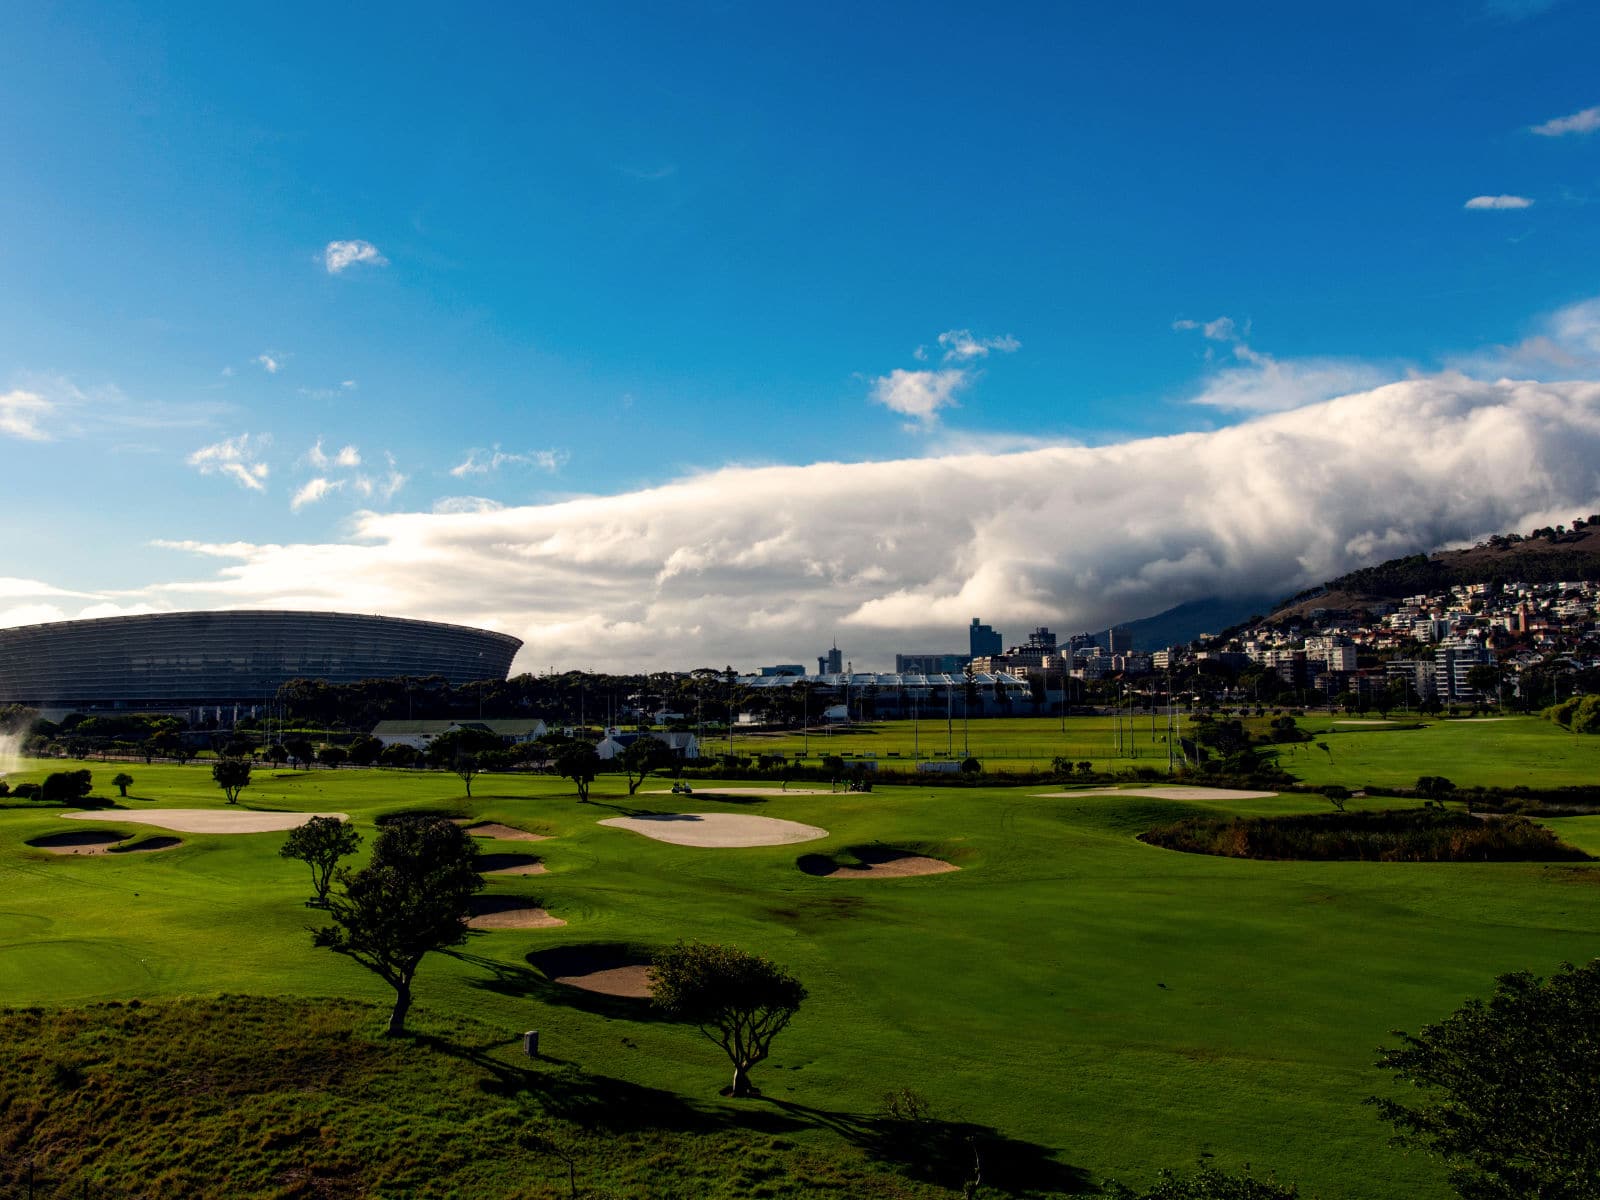 Golfplatz und Stadion in Kapstadt